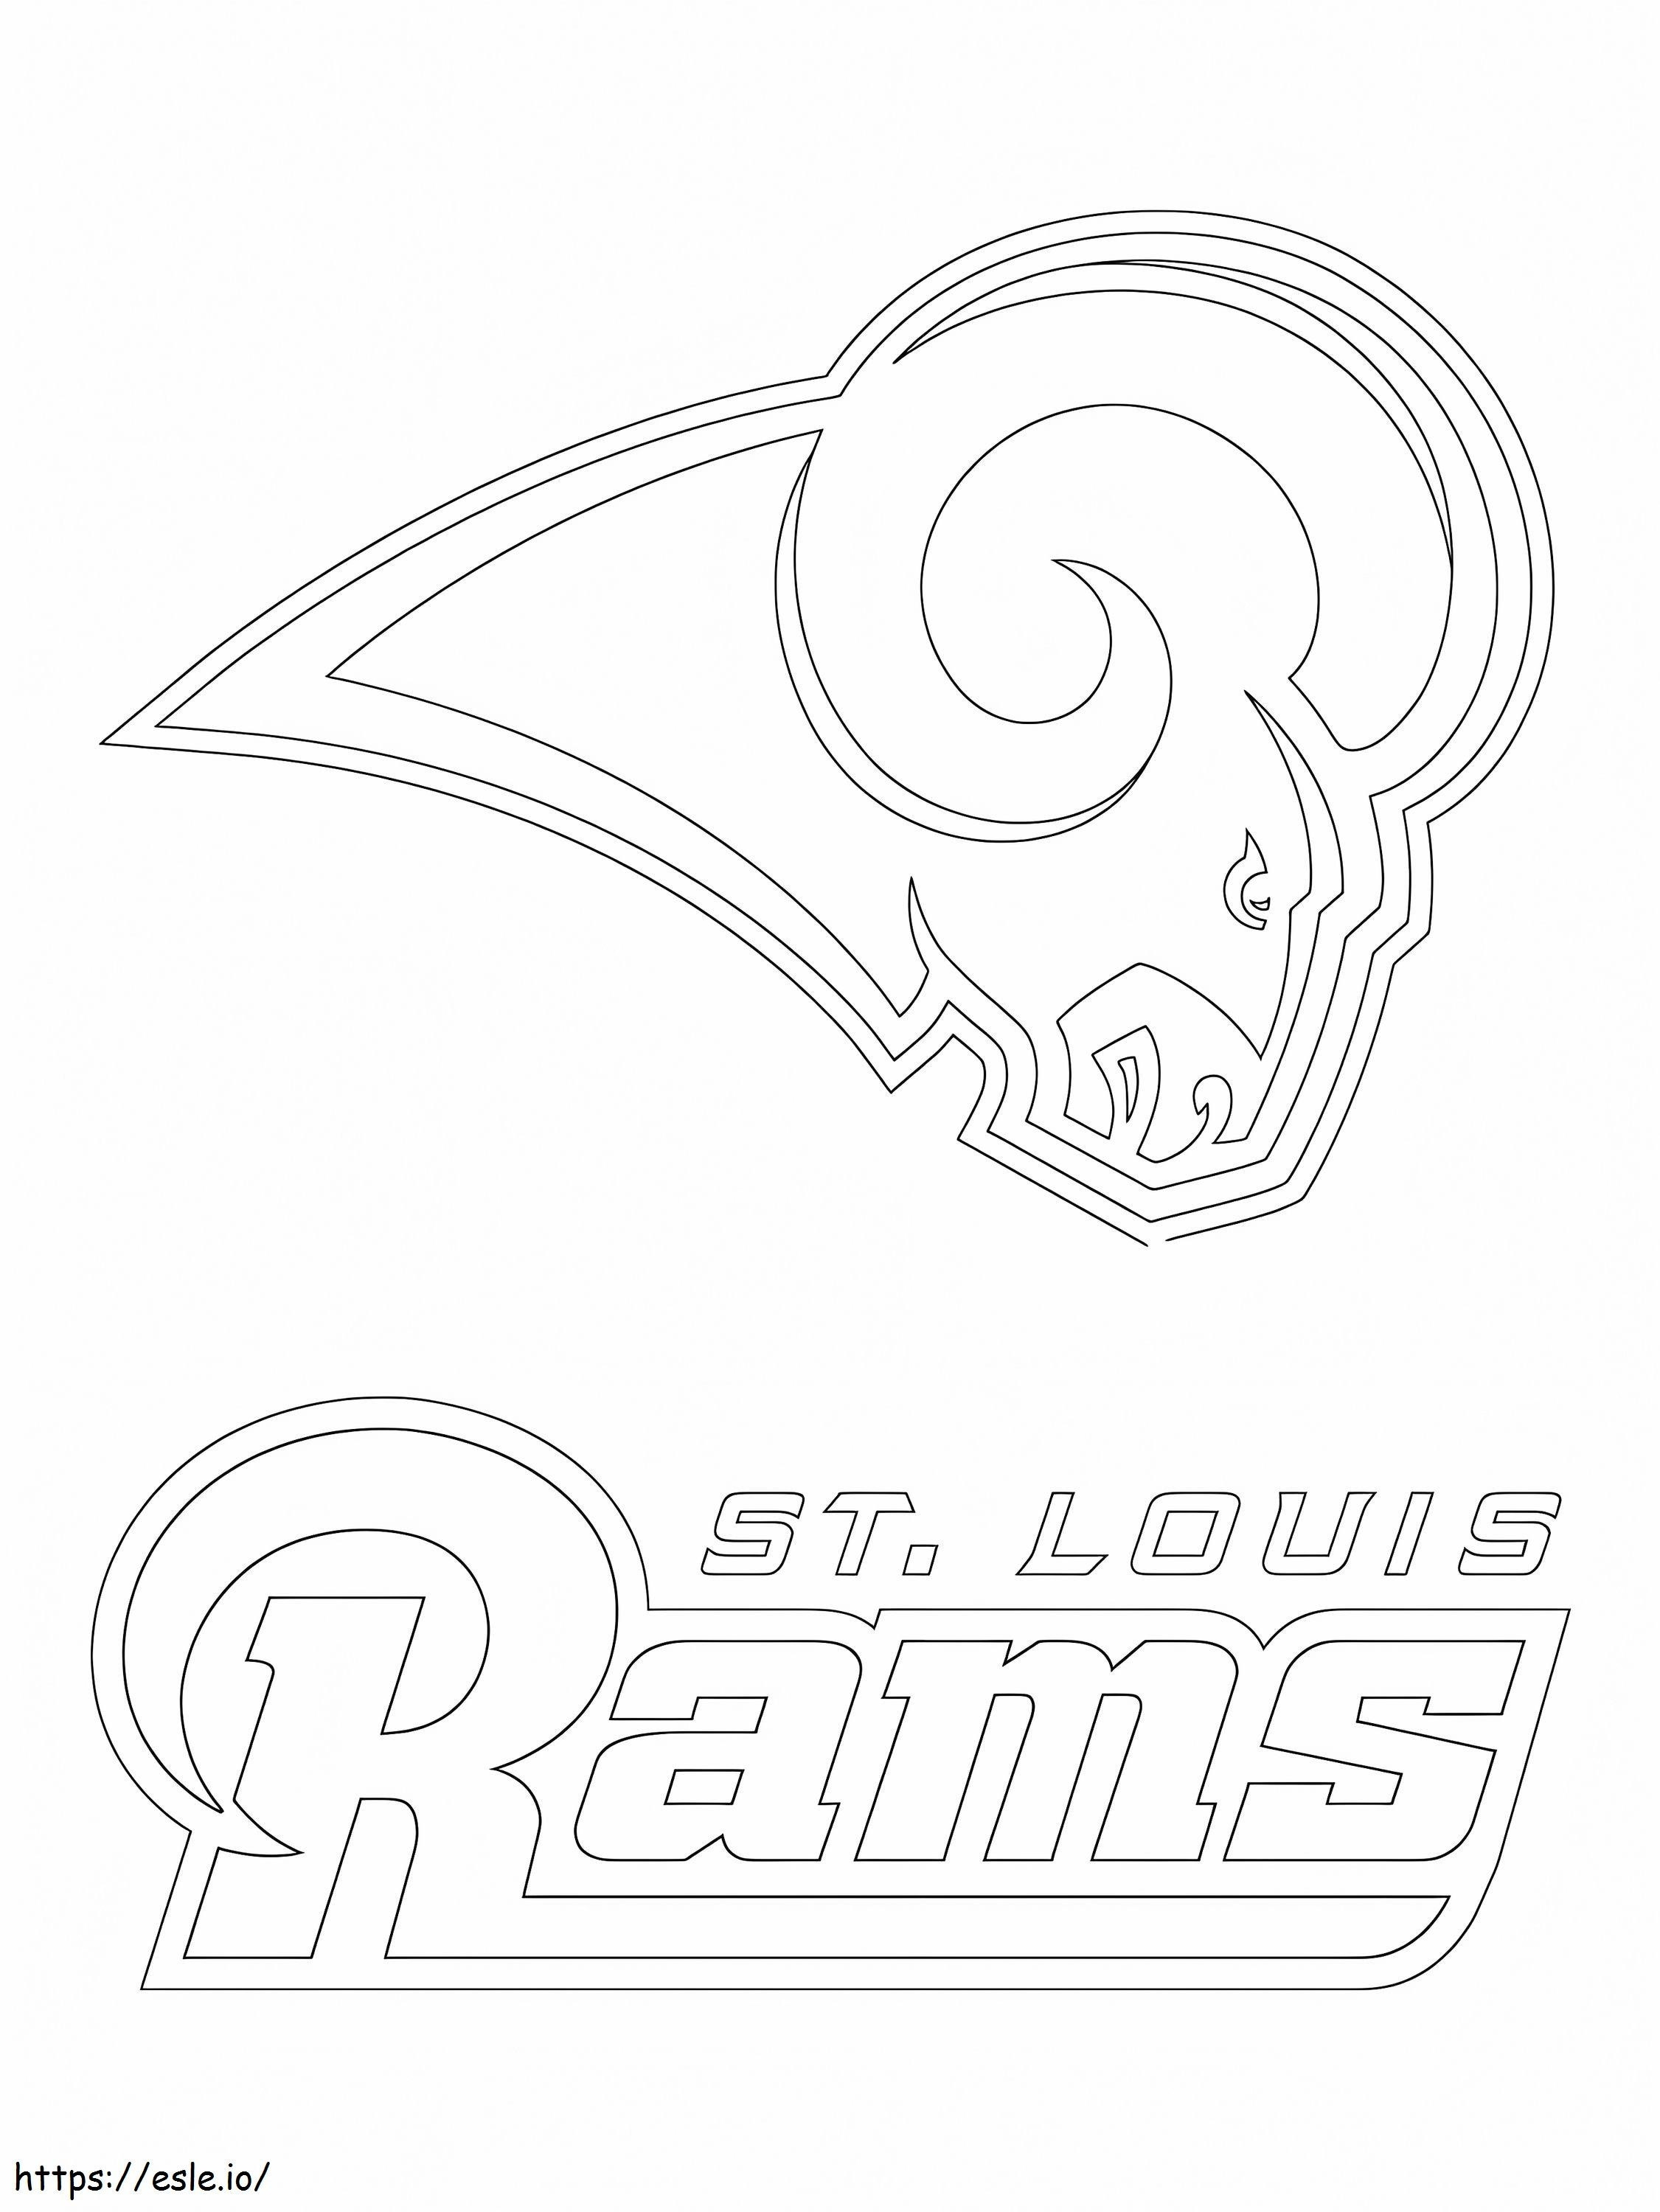 St. Louis Rams-logo kleurplaat kleurplaat